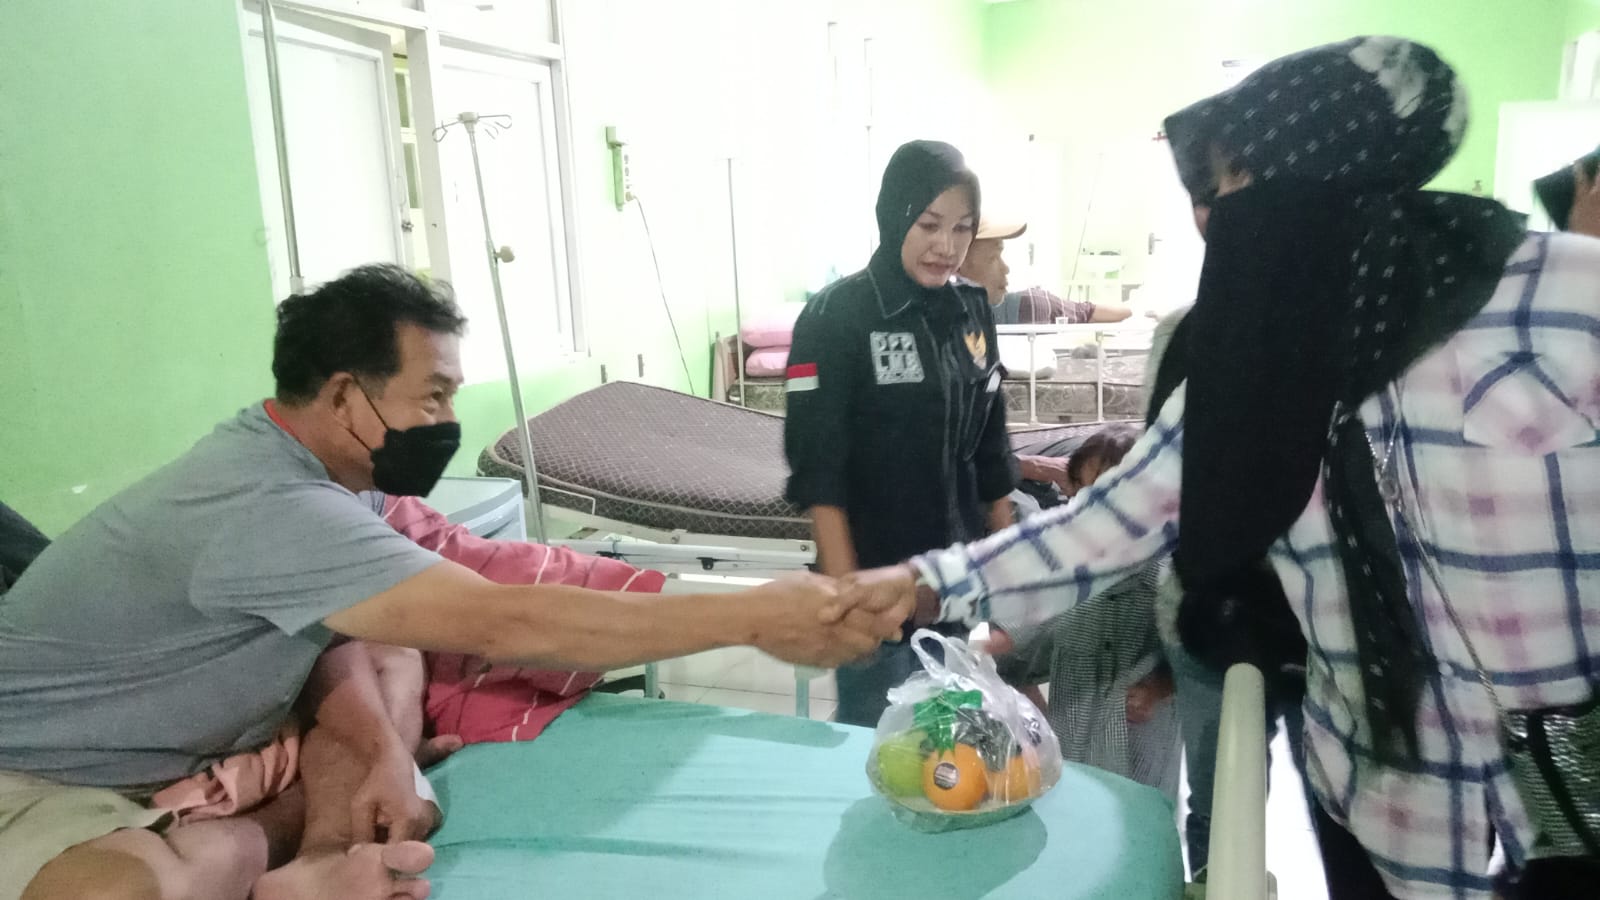 Srikandi Laskar Banua Borneo Menjenguk Warga Kotabaru yang Sakit,  Memberikan Harapan dan Semangat Kepada Pasien